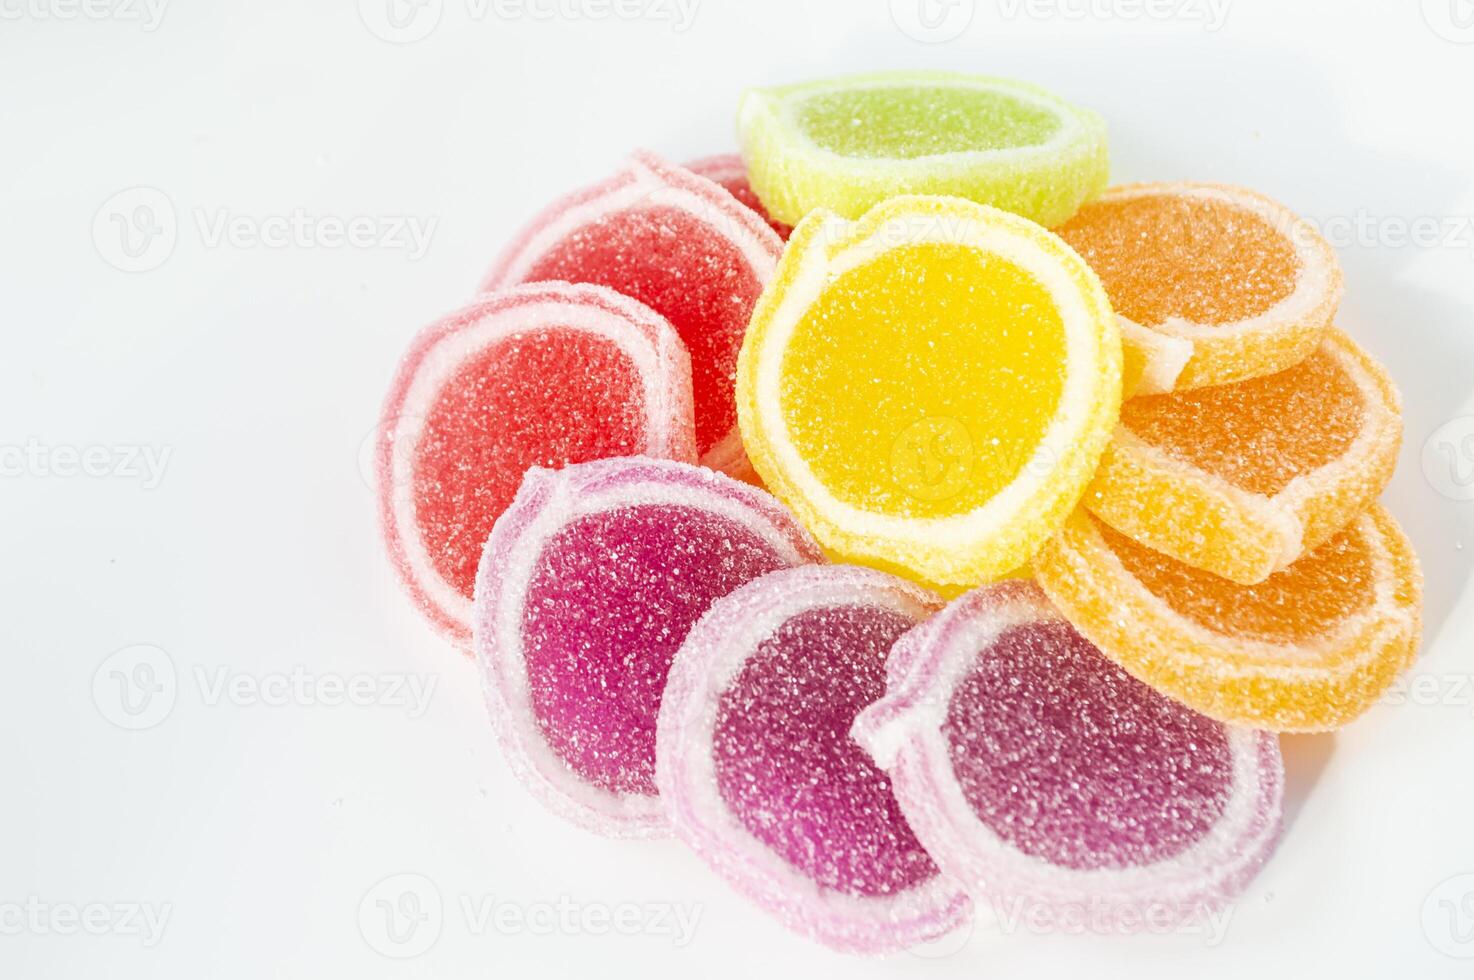 en lugg av färgrik klibbig godis på en vit yta foto